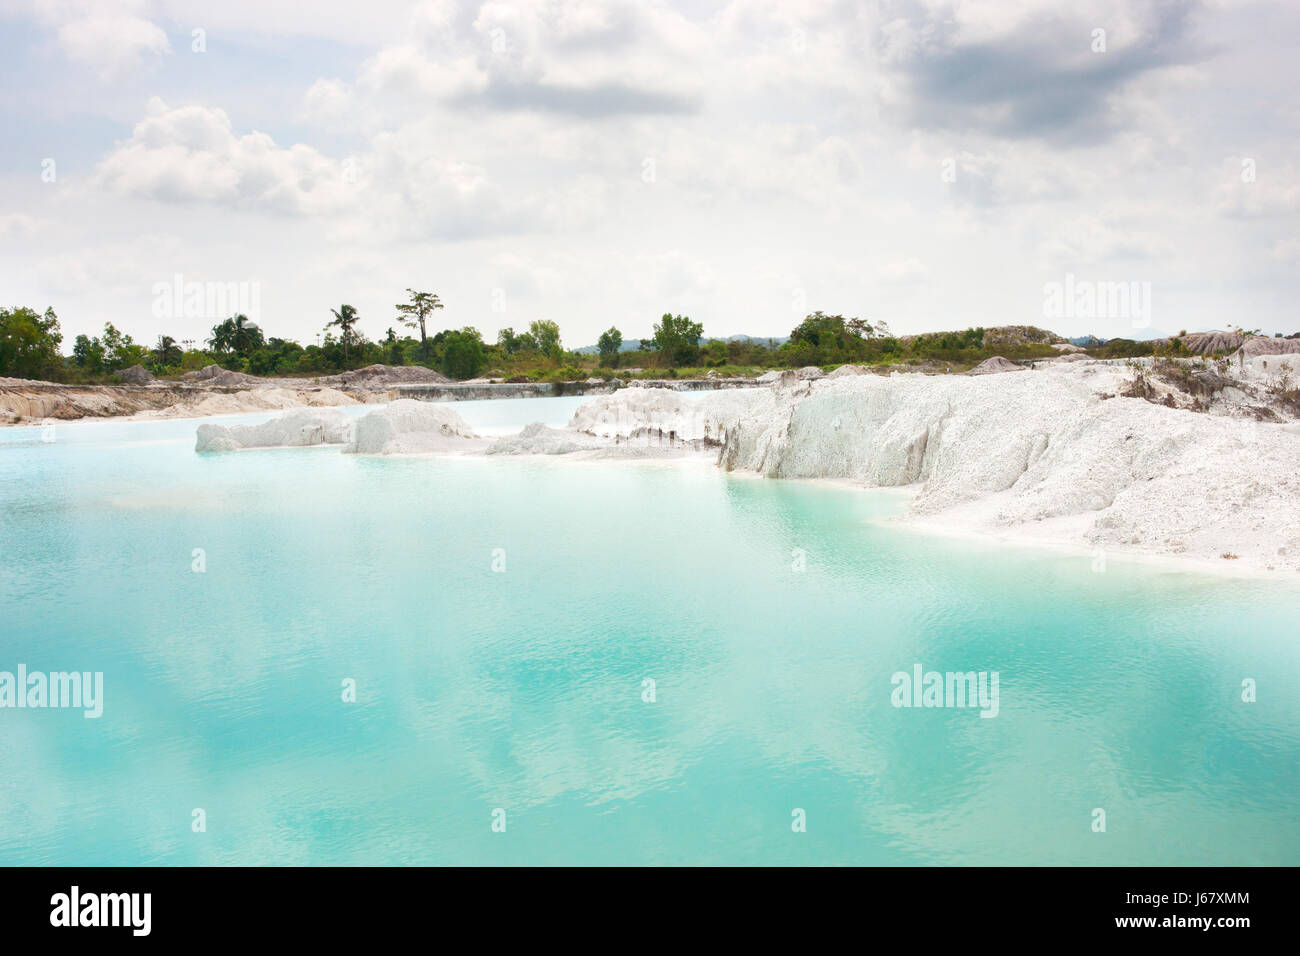 Man-made del lago artificiale di caolino, girato dalla massa di data mining fori riempiti con acqua di pioggia formando un chiaro lago blu, aria Raya Village, Tanjung Pandan, B Foto Stock